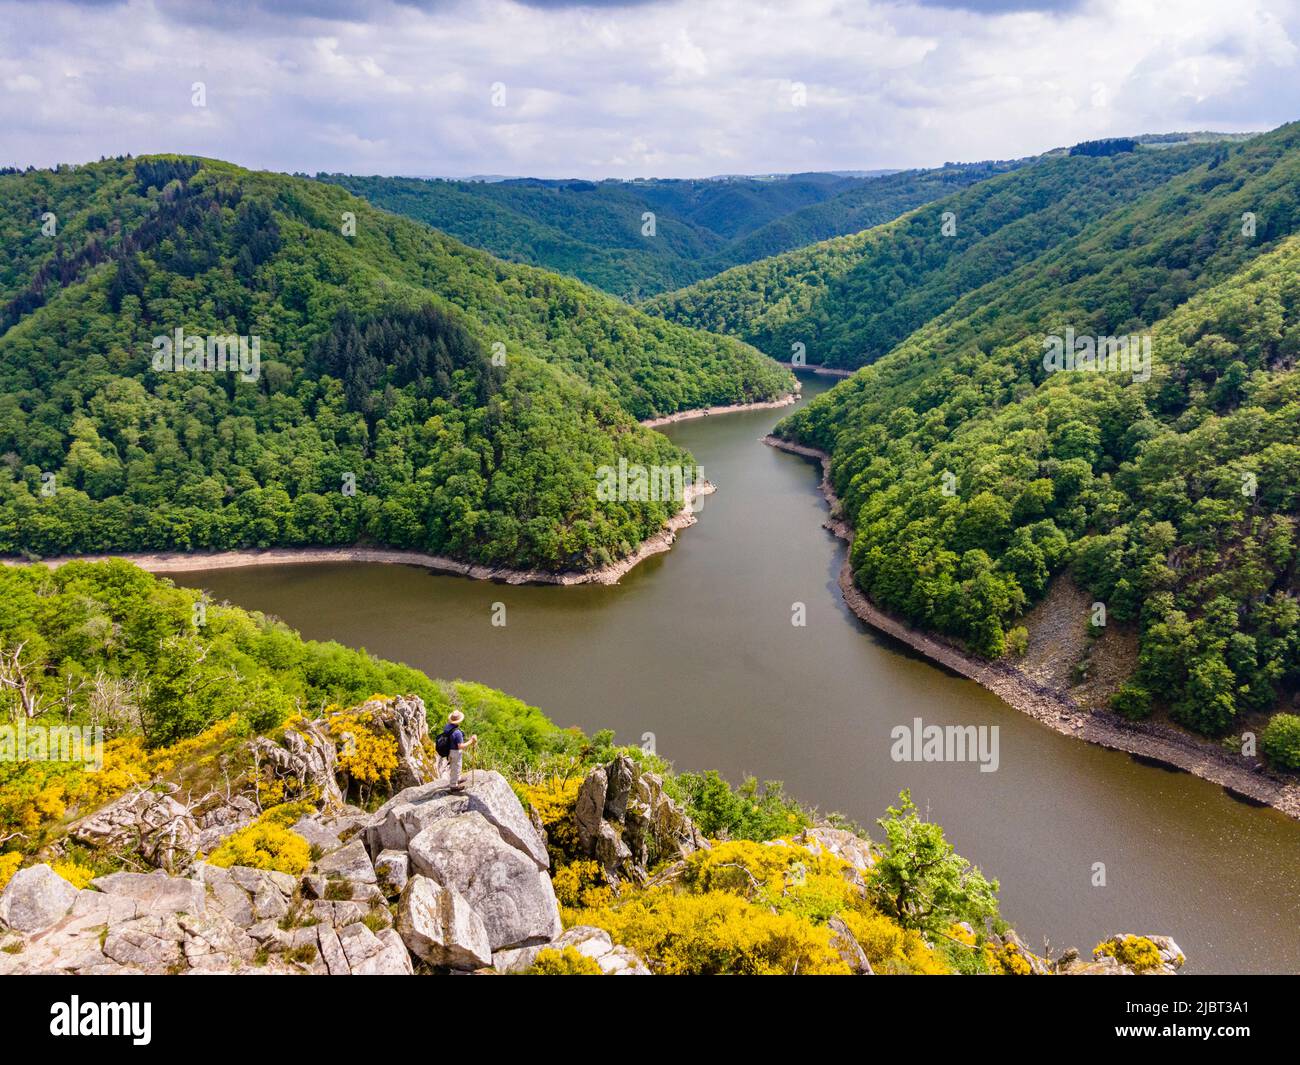 Francia, Correze, Neuvic, confluencia del Sumene y la Dordogne, Gratte Bruyere belvedere, embalse de la presa de Aigle (vista aérea) Foto de stock